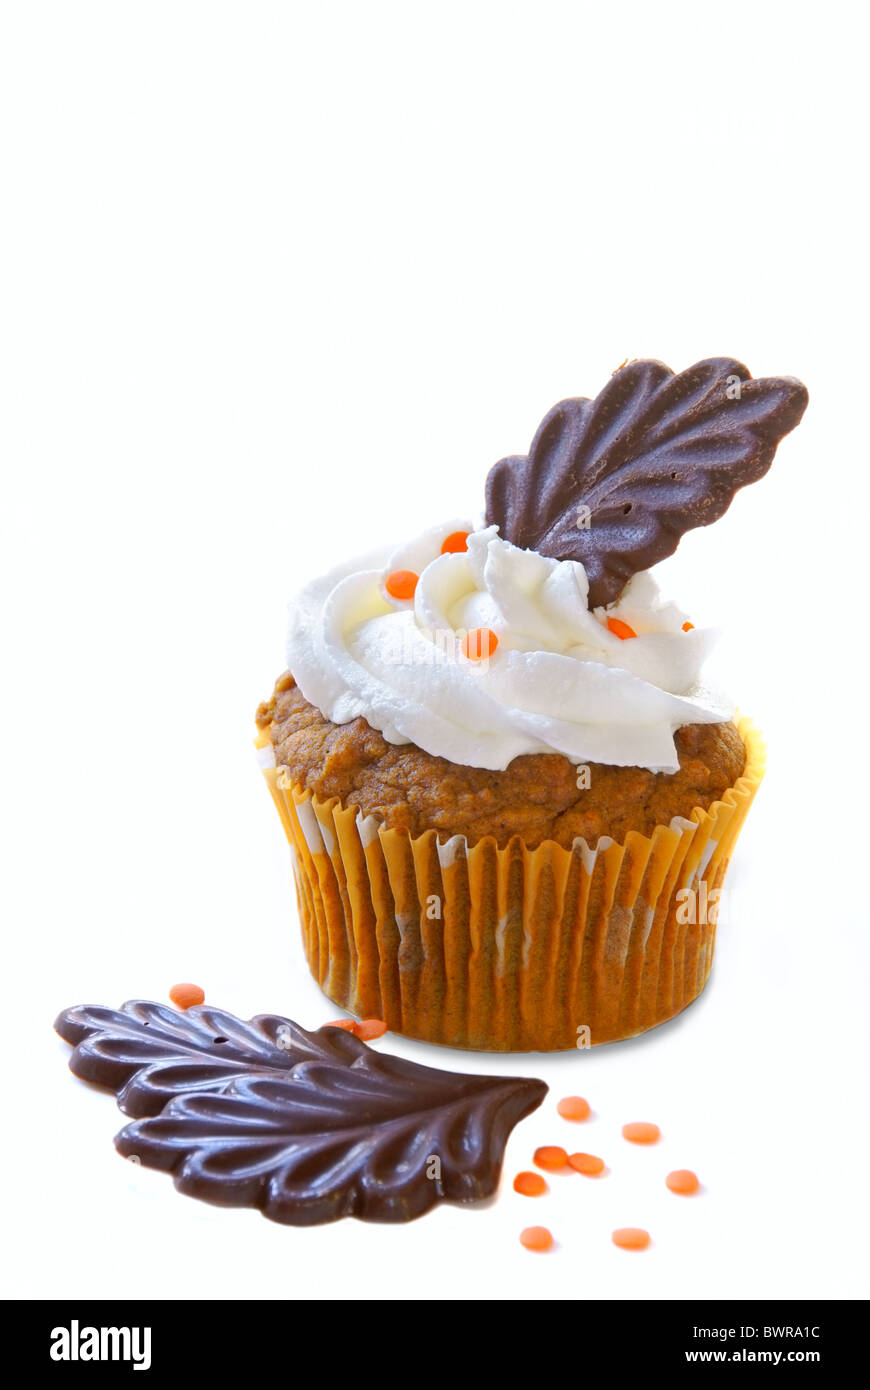 Kürbis Gewürz Cupcake mit Vanille Zuckerguss verziert mit orange Streusel und Schokolade Blätter für das Thanksgiving-Feiertag Stockfoto